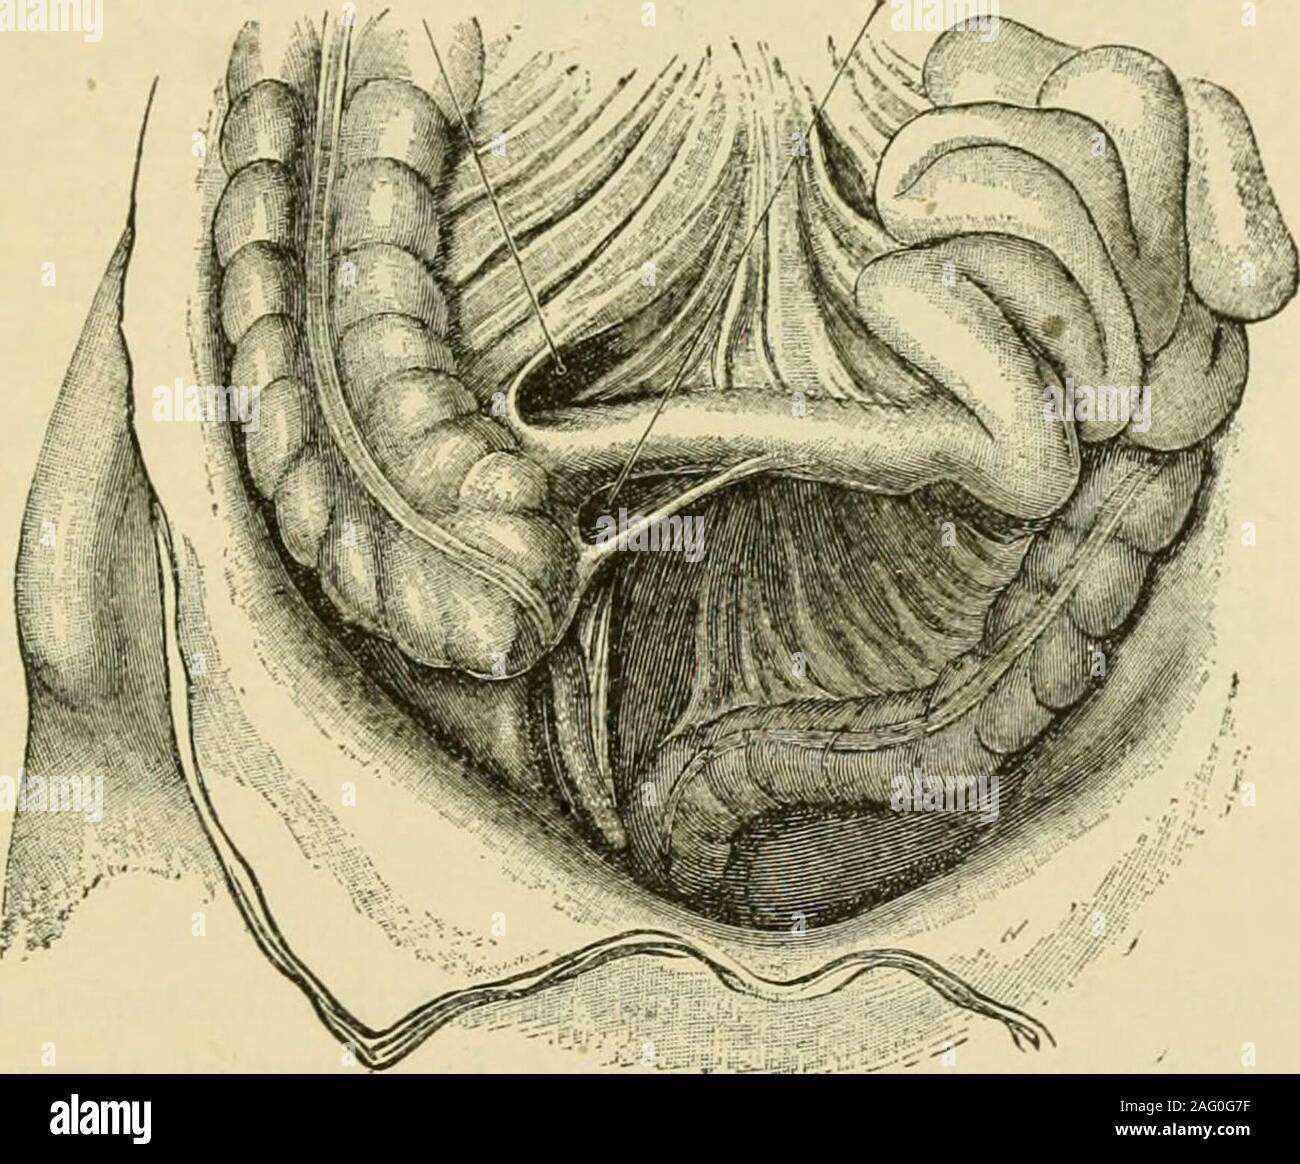 . Manuale di chirurgia operativa. ral varietà delle cavità in questa situazione,ma per i nostri scopi il riconoscimento della sua esistenza e della sua propensione a variare,sufficiente. Intestino può foro a modo suo nella cavità descritta, ingrandimento theopening e formando un retro-ernia peritoneale (Treitzs ernia). Il pouchformed dall'ernia gut può tendere a sinistra sotto il colonand discendente verso il basso per il bacino. Verso l'alto l'ernia può passare sotto la rootof il mesocolon trasversale in una posizione dietro lo stomaco e la milza.strangolamento è rara. Comunemente si suppone che il piccolo intestino da soli Foto Stock